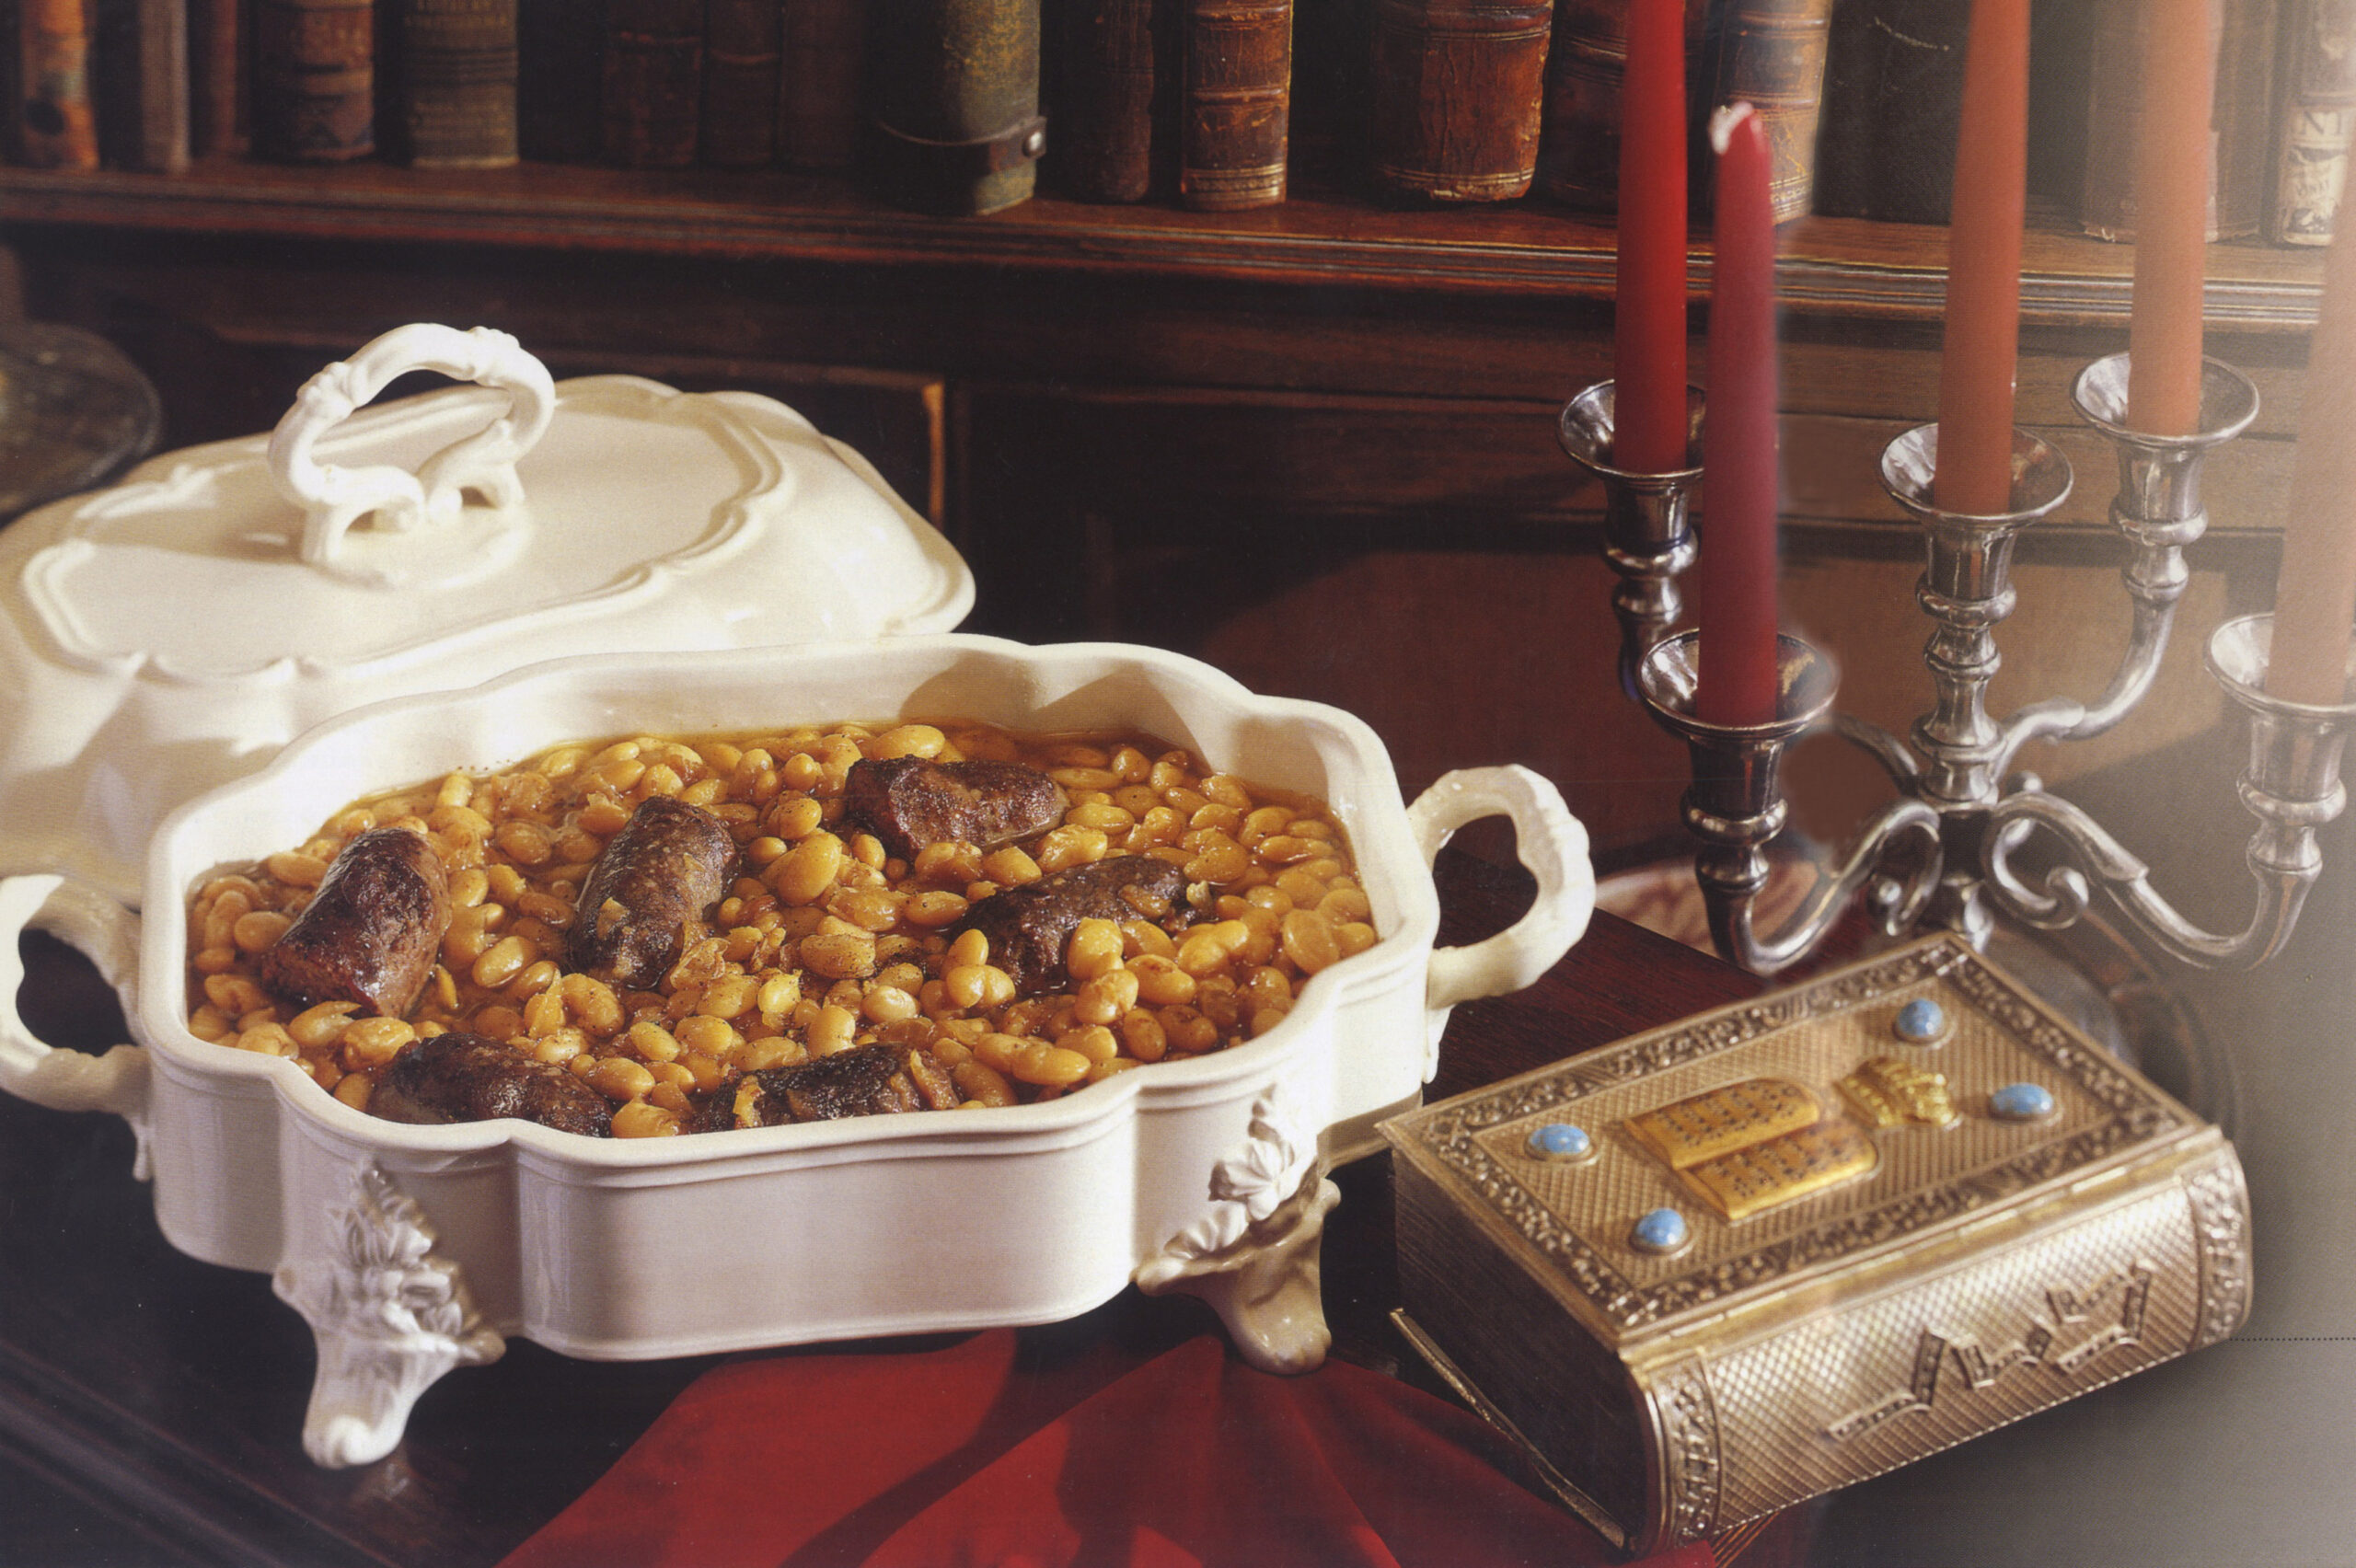 Η Σεφαραδίτικη κουζίνα των Εβραίων της Θεσσαλονίκης: συνταγές, επιρροές και συμβολισμοί